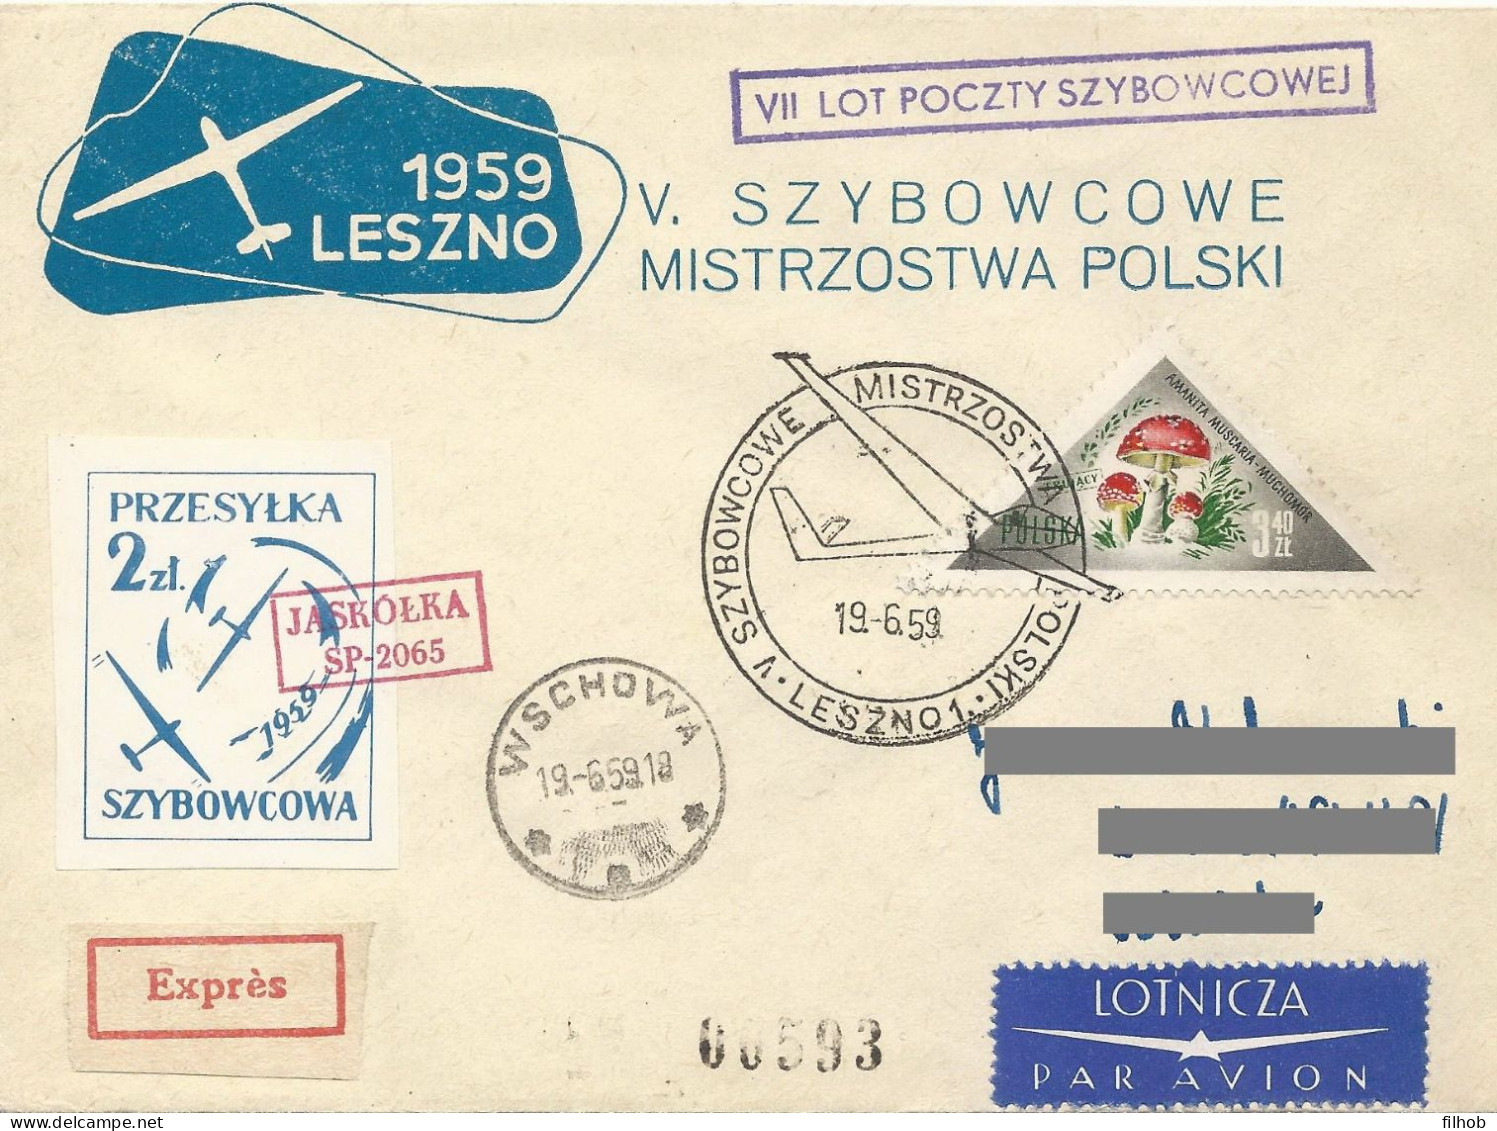 Poland Post - Glider PSZ.1959.lesz.05: Sport Leszno Polish Championships Jaskolka - Gliders